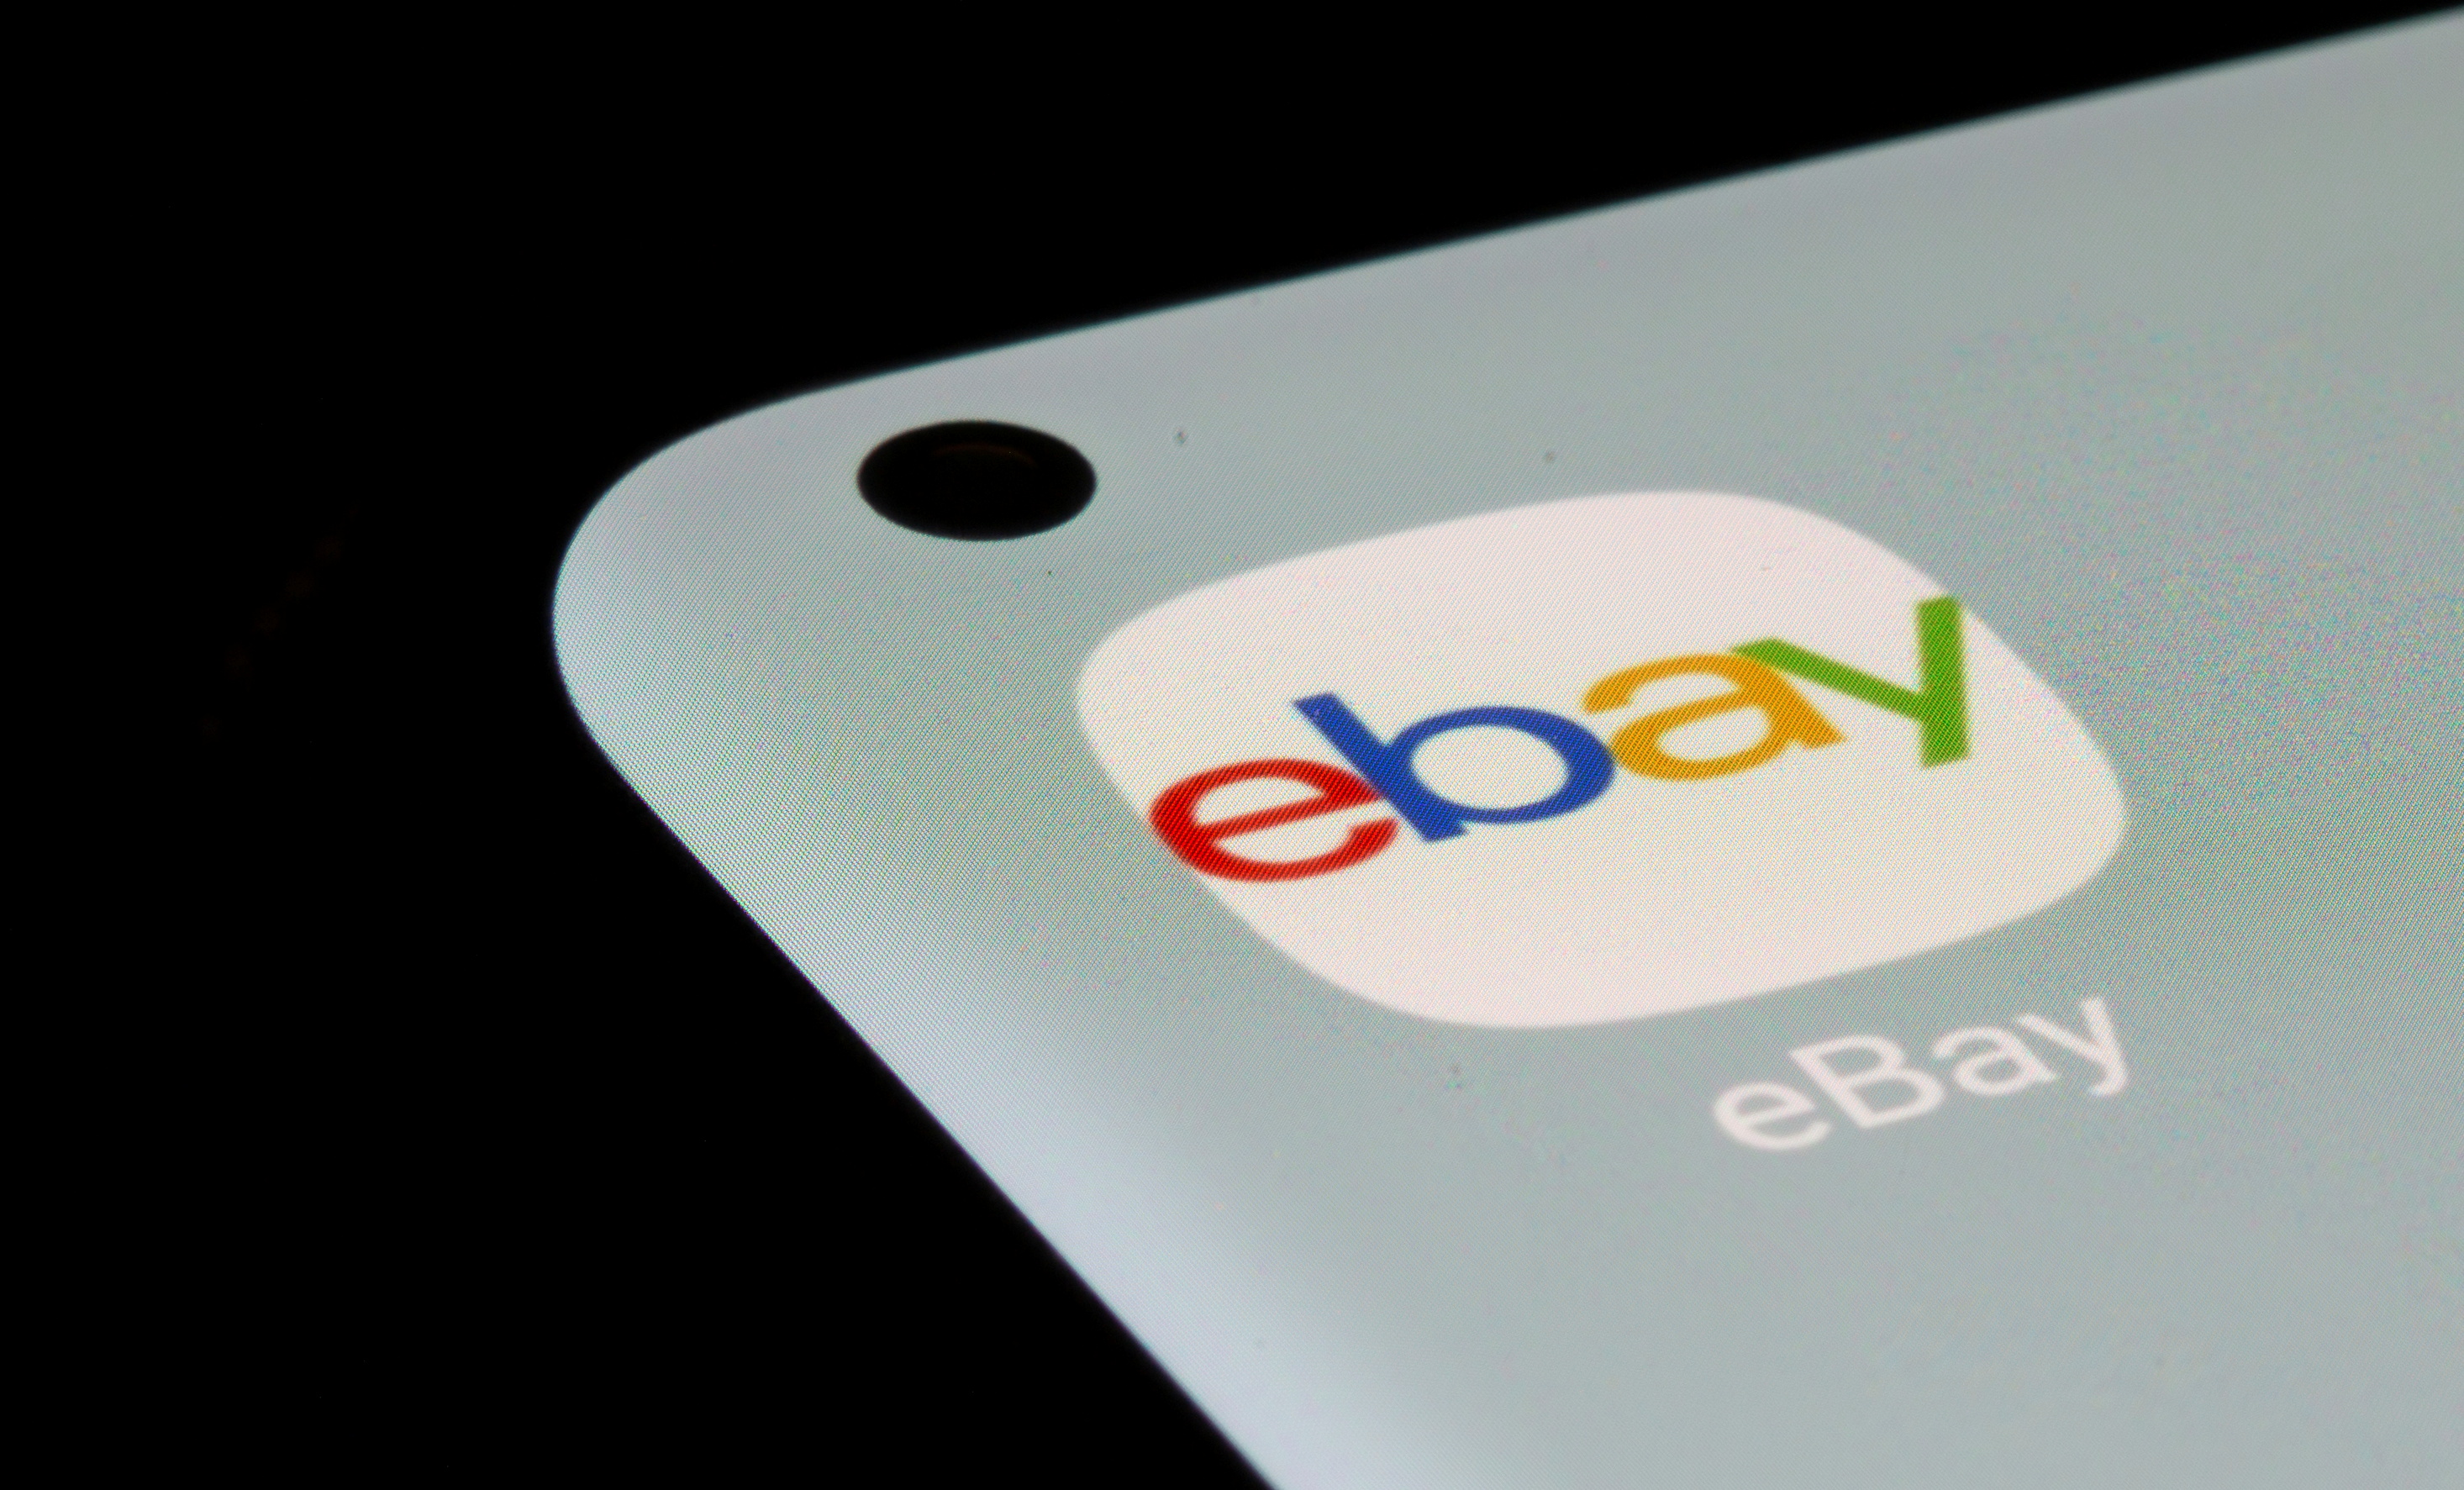 ایالات متحده از eBay به دلیل فروش محصولات مضر شکایت کرد